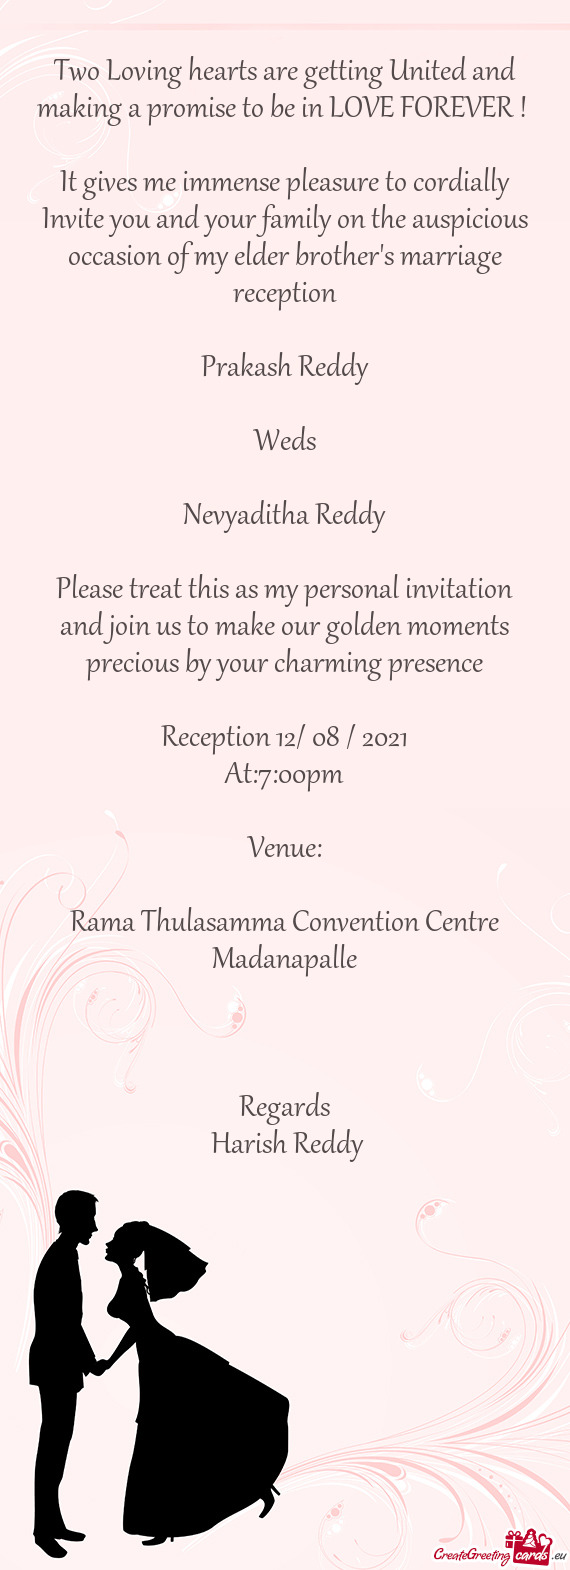 Rama Thulasamma Convention Centre